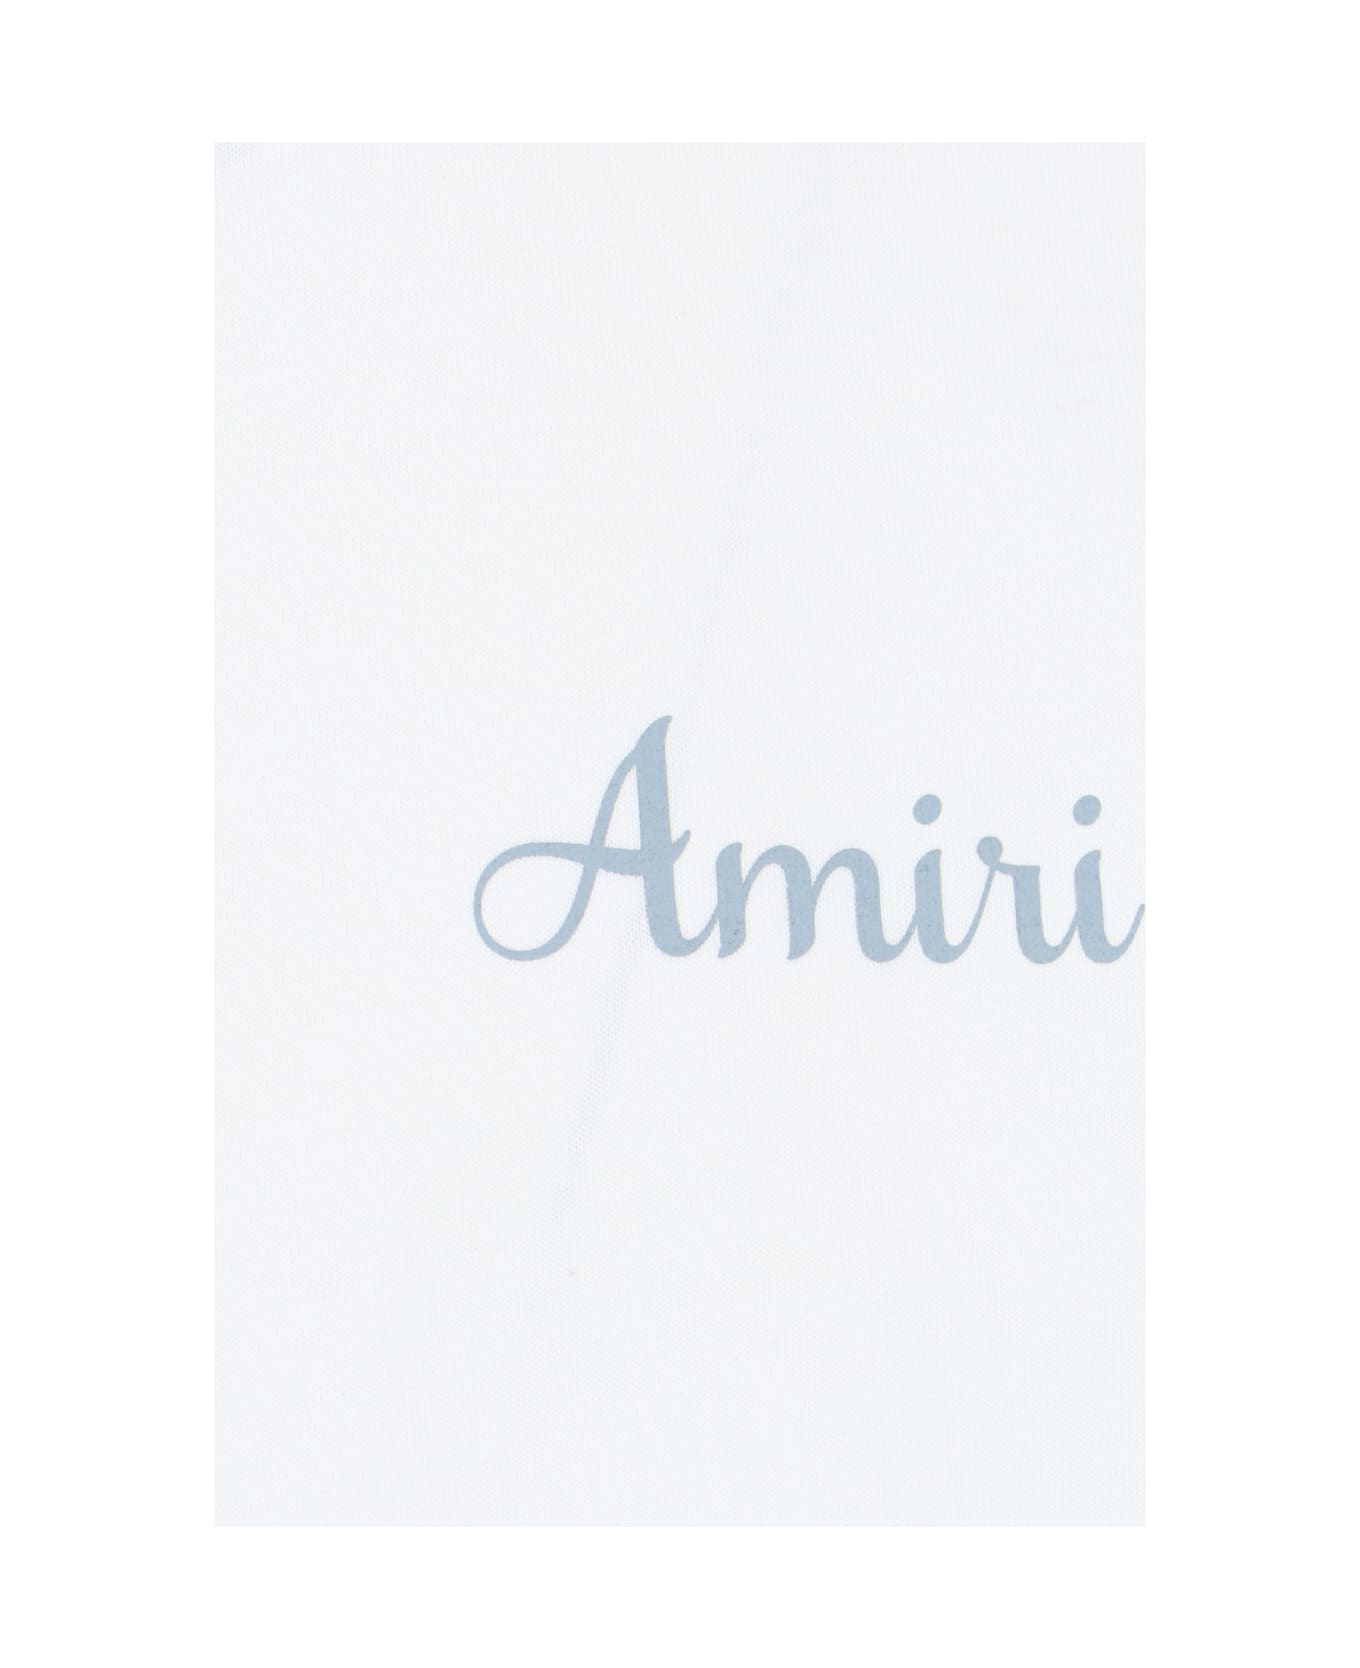 AMIRI Back Print T-shirt - White シャツ